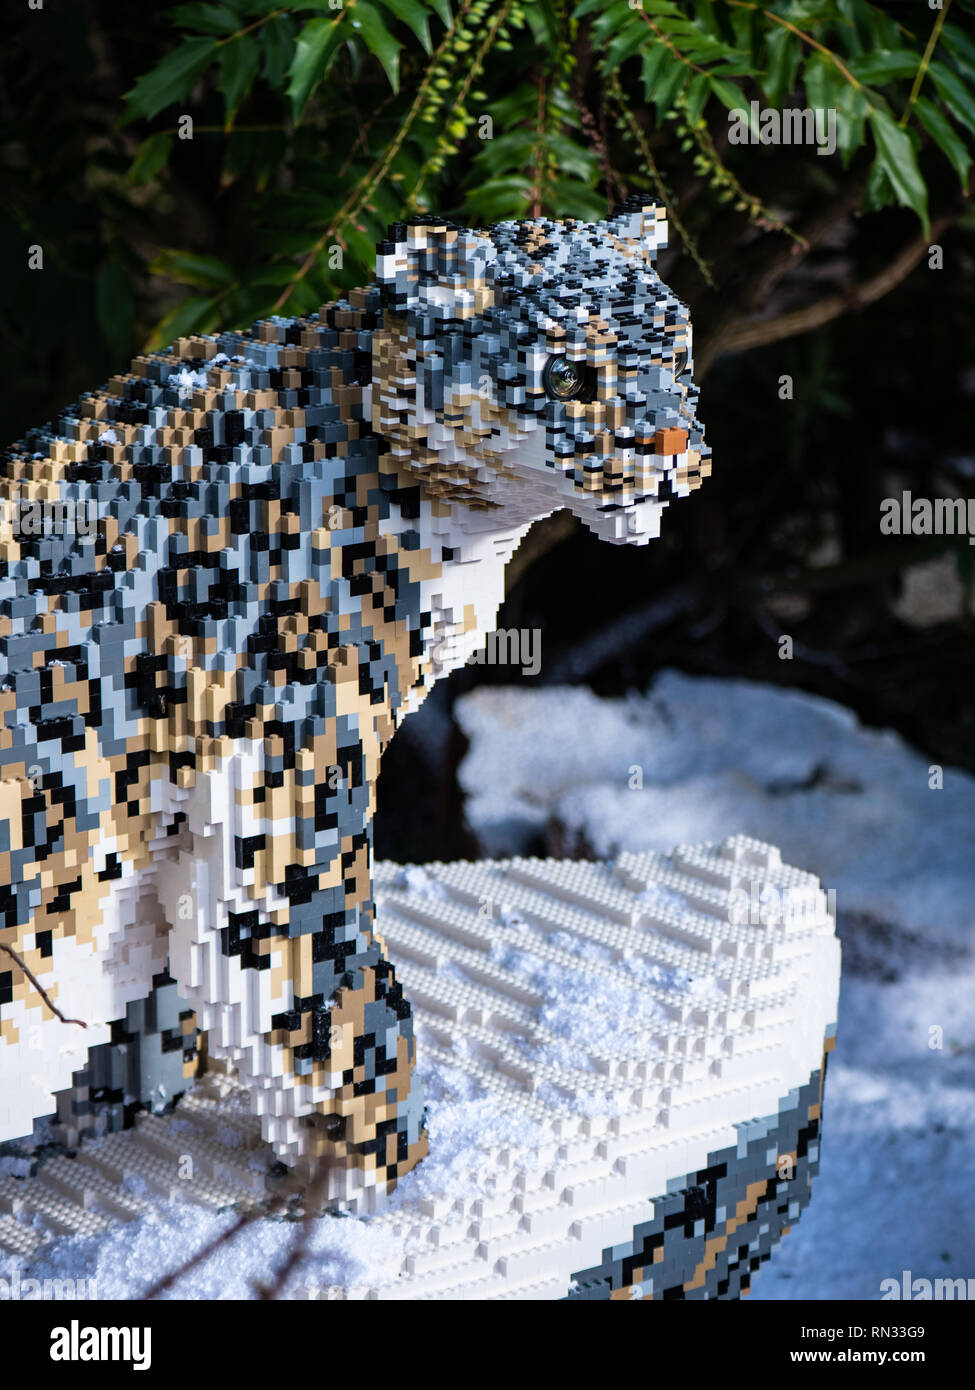 Snow Leopard Modell, einer Der lifesize Lego große Katzen in Chester Zoo Stockfoto